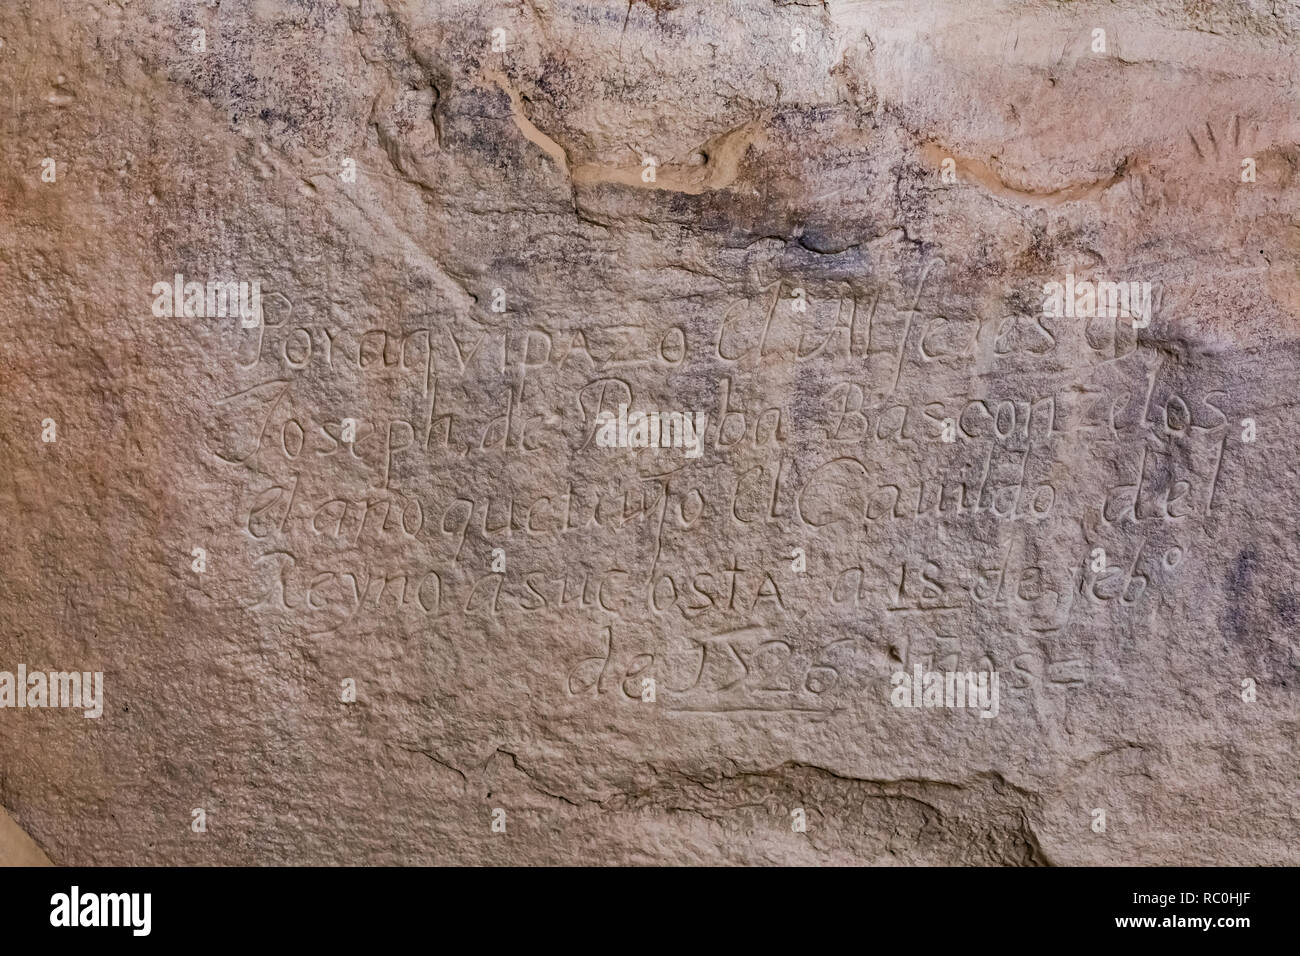 Inscripción española desde hace siglos, vistos a lo largo de la inscripción Rock Trail en Monumento Nacional El Morro, Nuevo México, EE.UU. Foto de stock